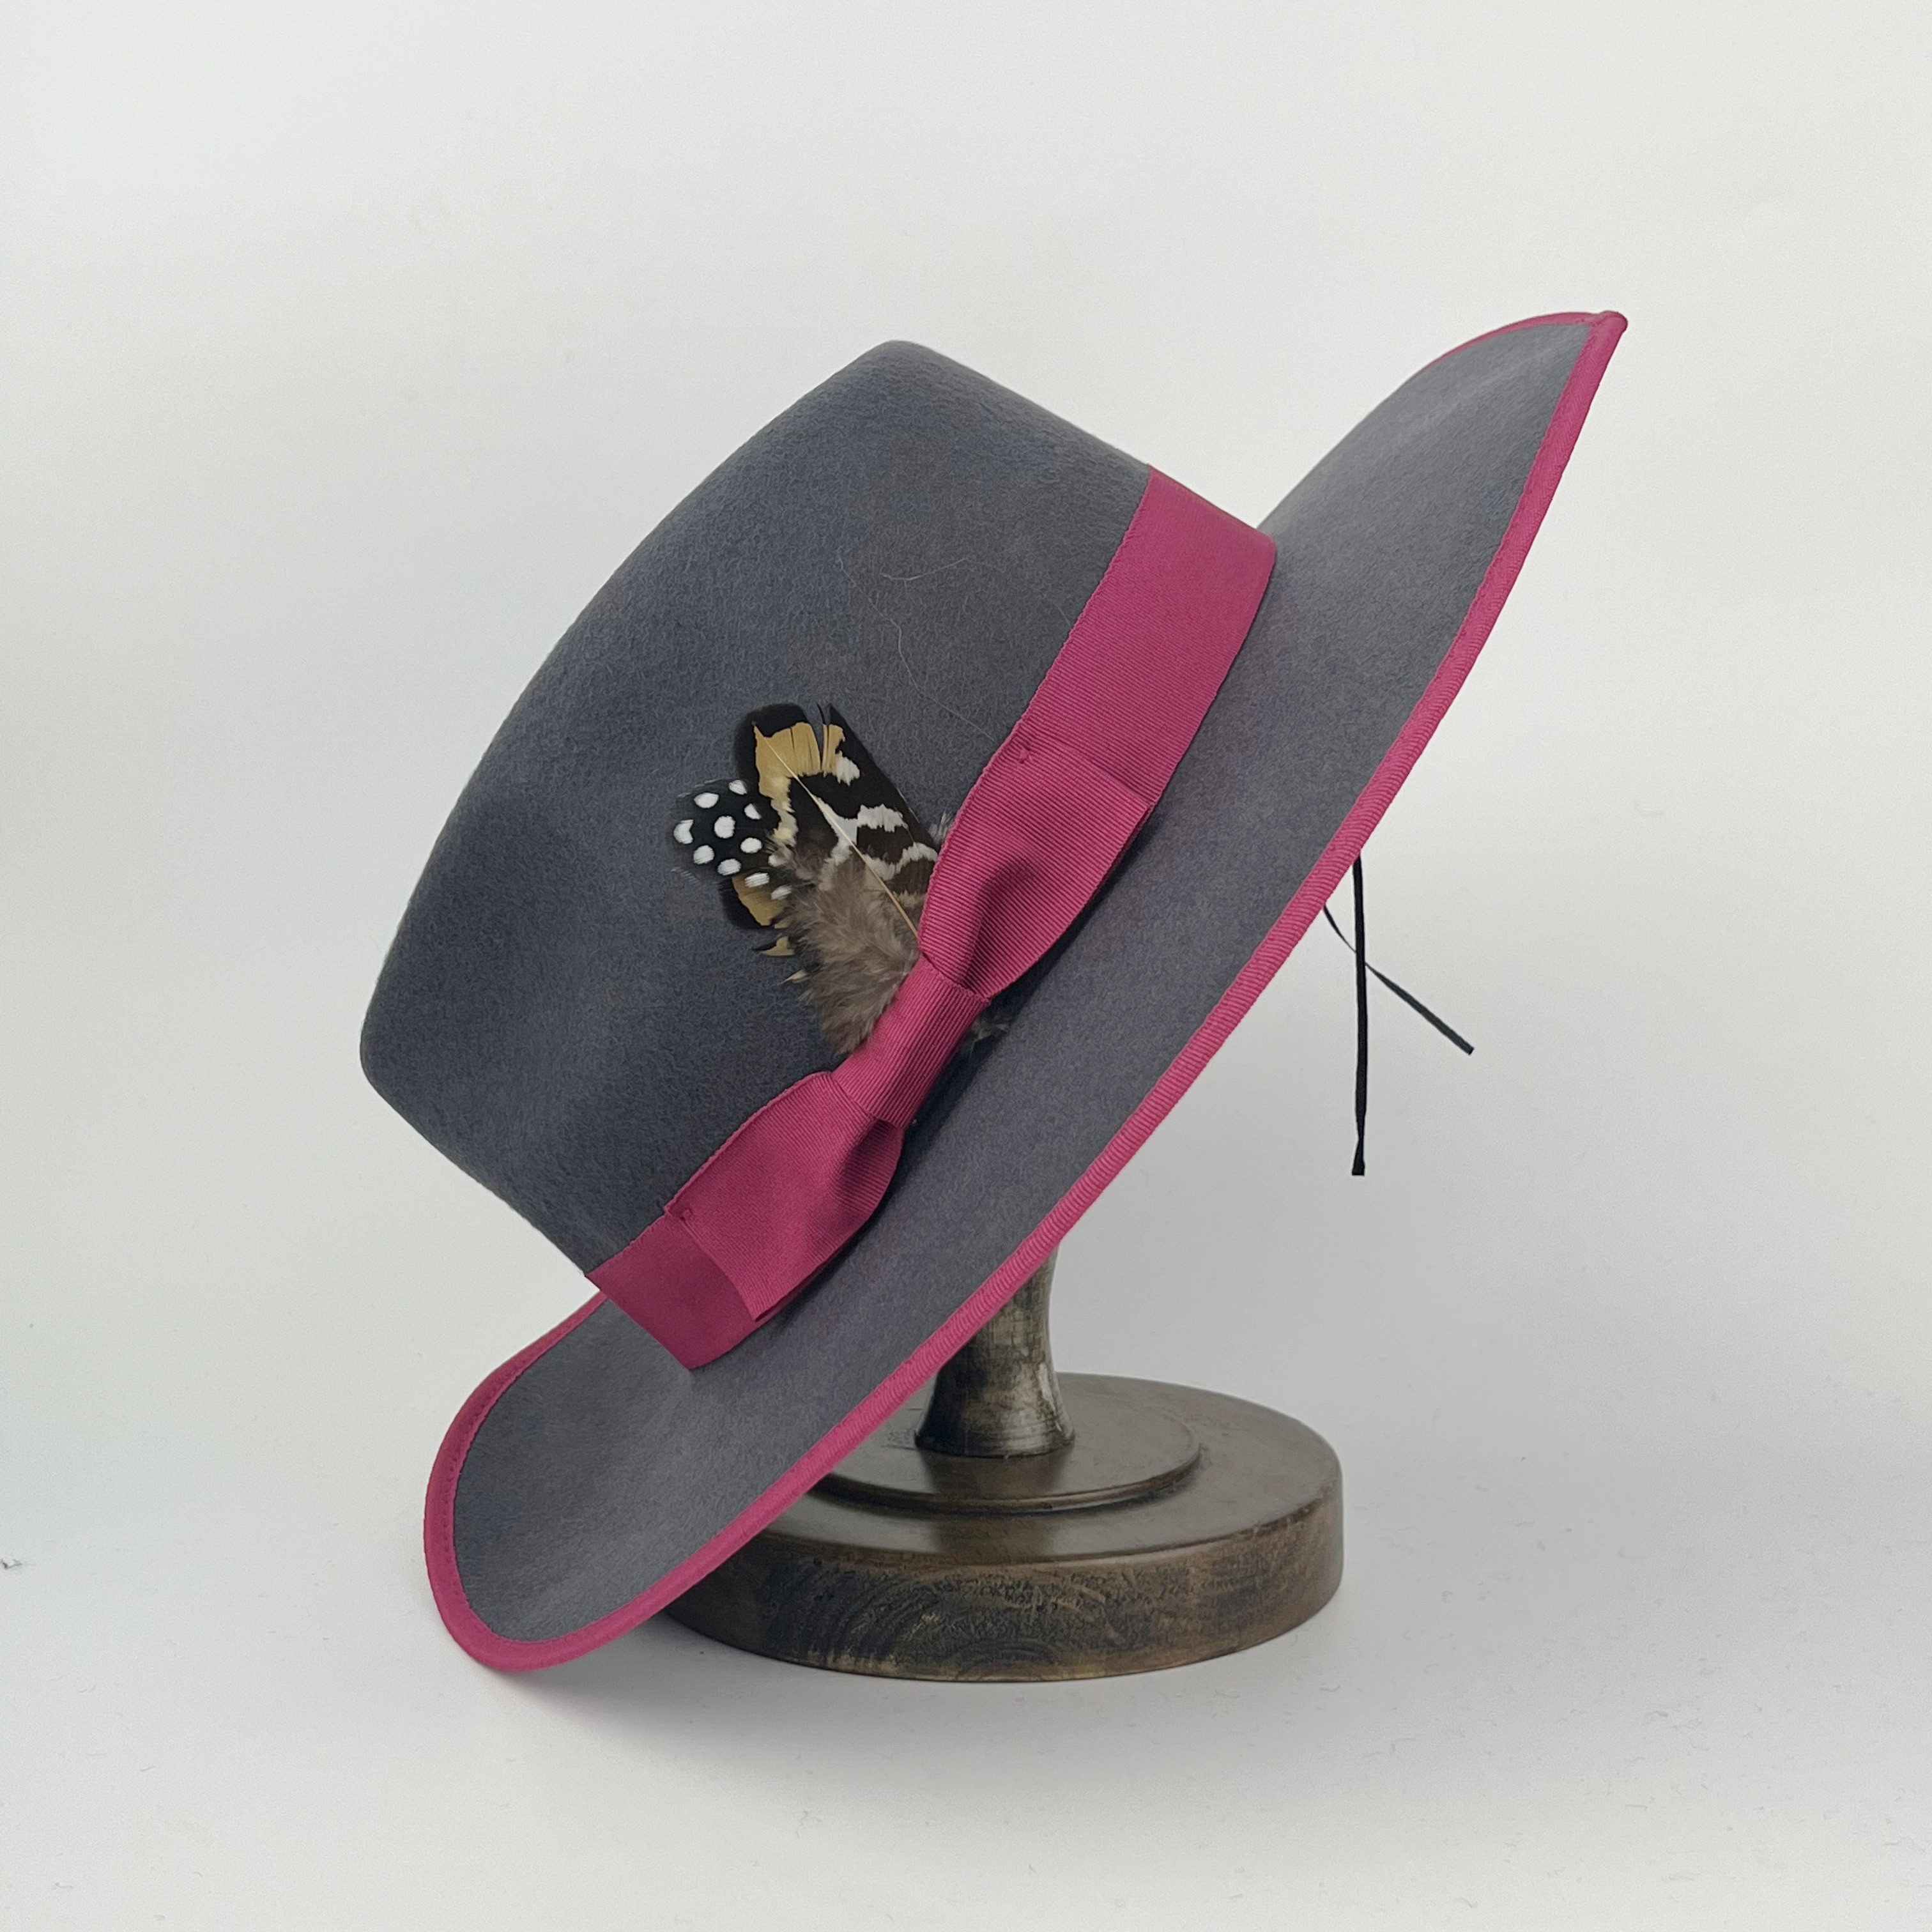  Sombrero clásico de lana de ala ancha de los hombres Fedora  sombrero clásico Trilby sombrero Jazz Cap con pluma, Rojo, talla única :  Ropa, Zapatos y Joyería